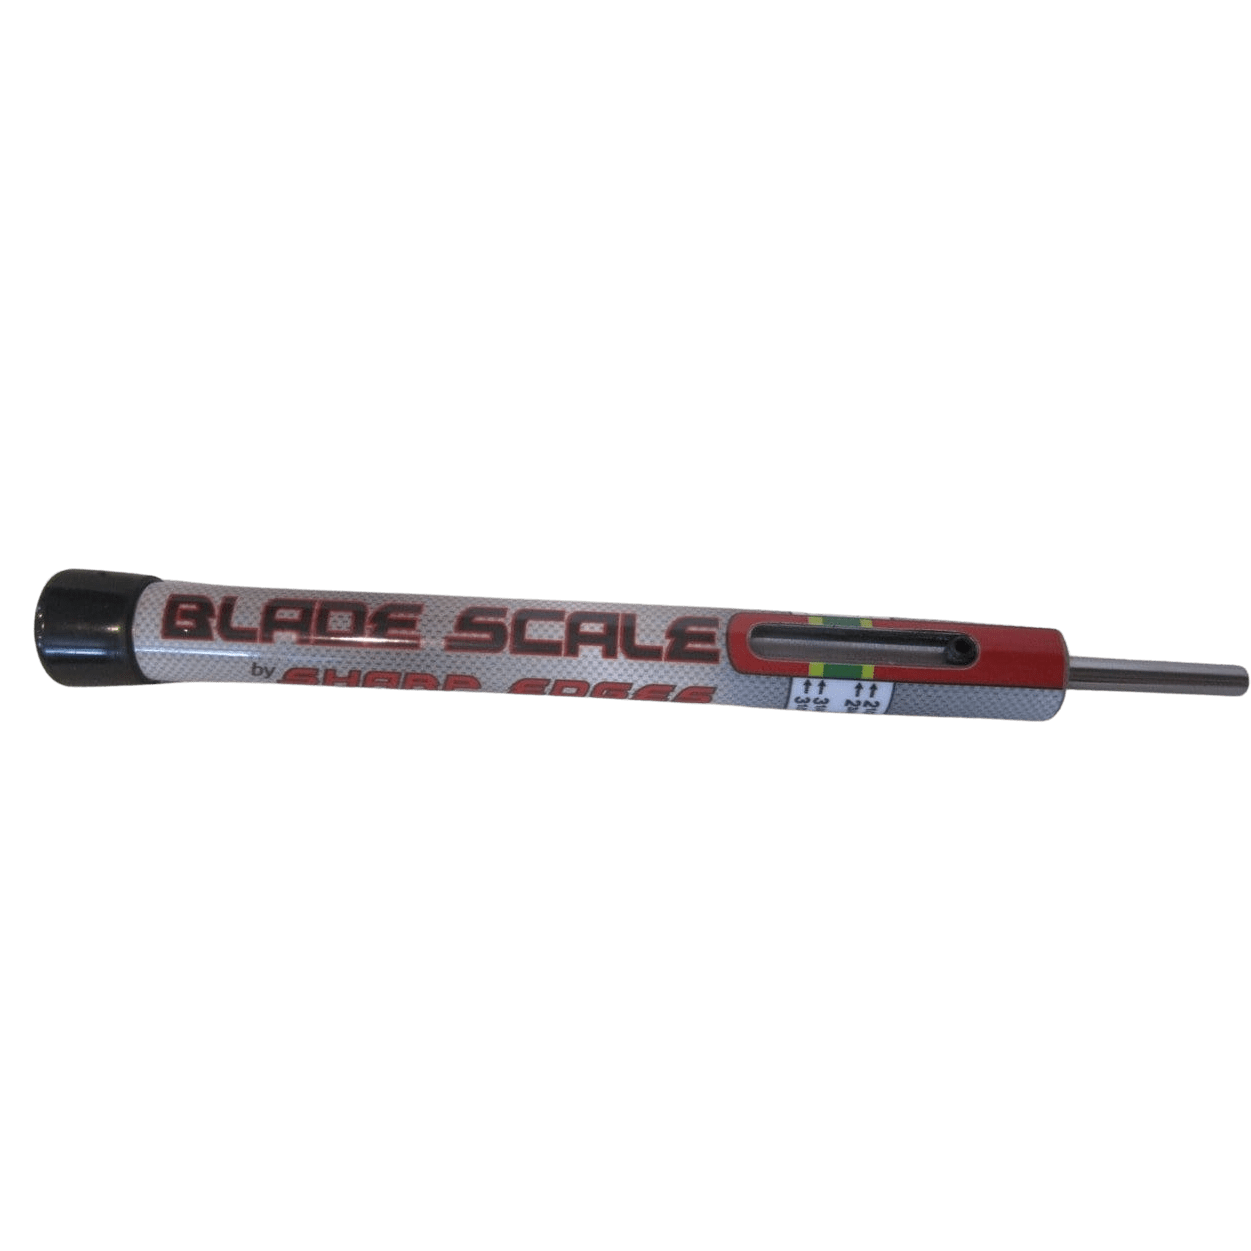 Tough-1 Clipper Blade Sharpener Kit